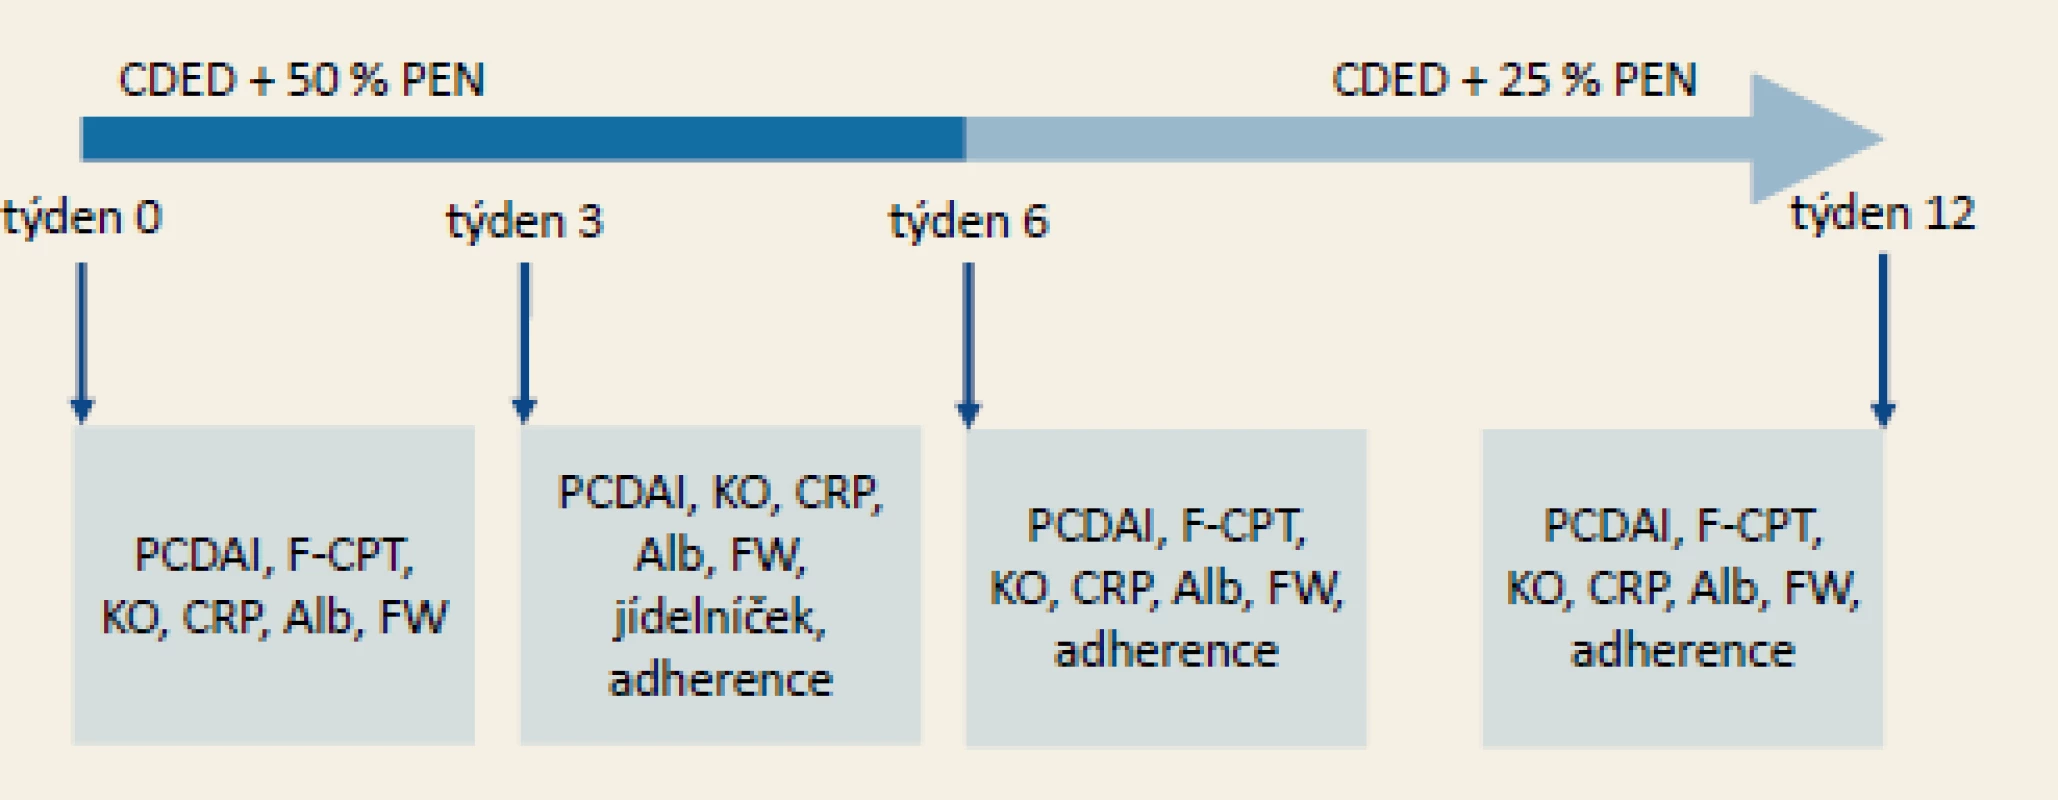 Zkrácený protokol studie Levine et al (2019) [10].
CDED byla v uvedené studii podávána v kombinaci s polymerní PEN v uvedeném schématu. Během podávání diety byly
v pravidelných časových bodech kontrolovány klinické a laboratorní parametry aktivity onemocnění.
CDED – Crohn’s disease exclusion diet, PEN – částečná enterální výživa, PCDAI (peadiatric Crohn’s disease activity index),
F-CPT – fekální kalprotektin, KO – krevní obraz a diferenciál, CRP – C-reaktivní protein, Alb – sérový albumin, FW – sedimentace
erytrocytů za 1 hod, jídelníček – jídelníček za 3 dny; posuzuje nutriční terapeut, adherence – posouzení adherence (míry
spolupráce) pacienta k dietě, viz. tab. 2.